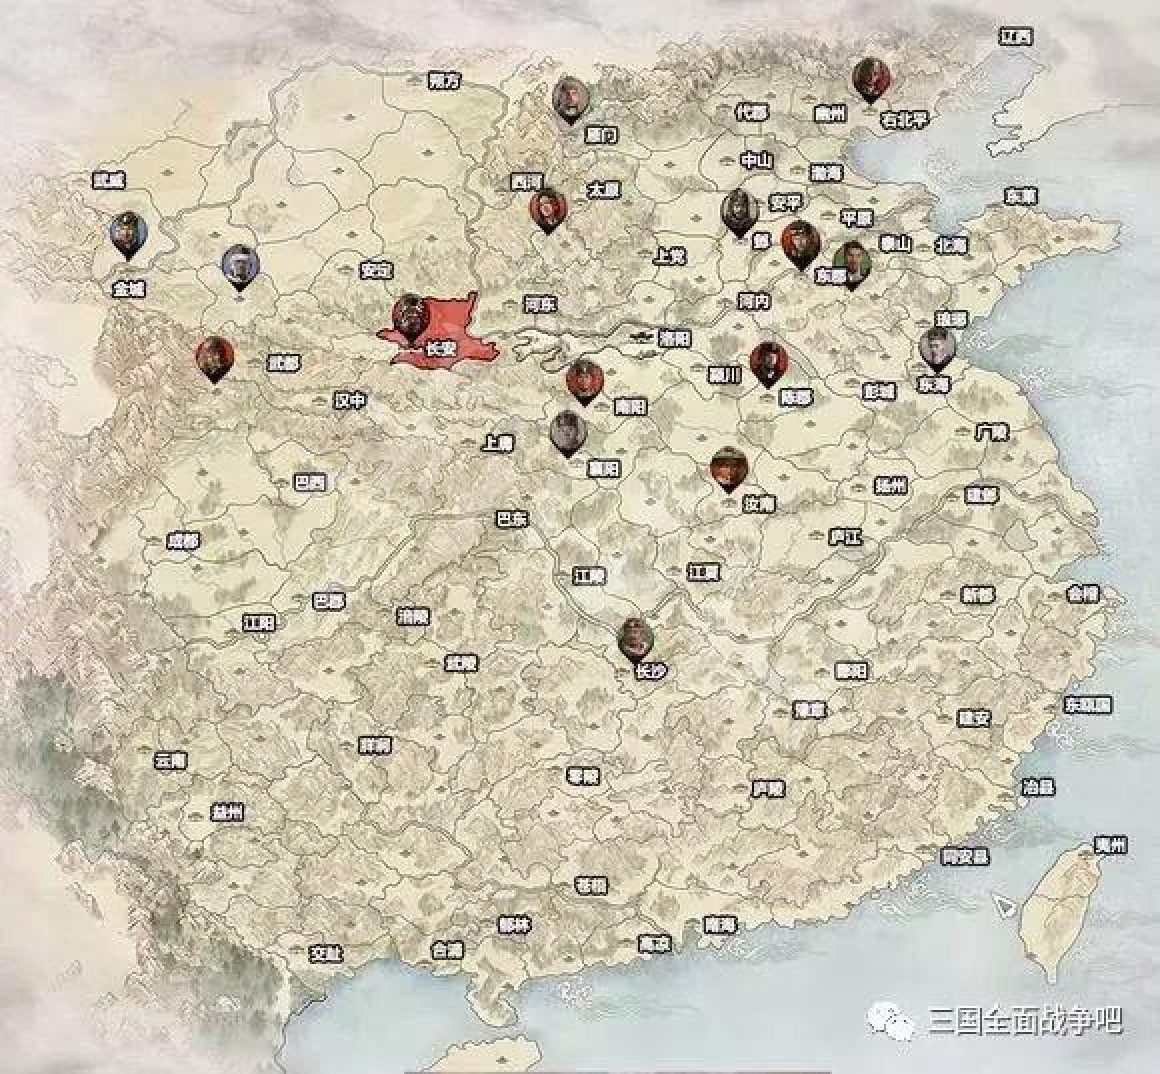 《全軍破敵三國》大地圖一覽 全主城標注說明